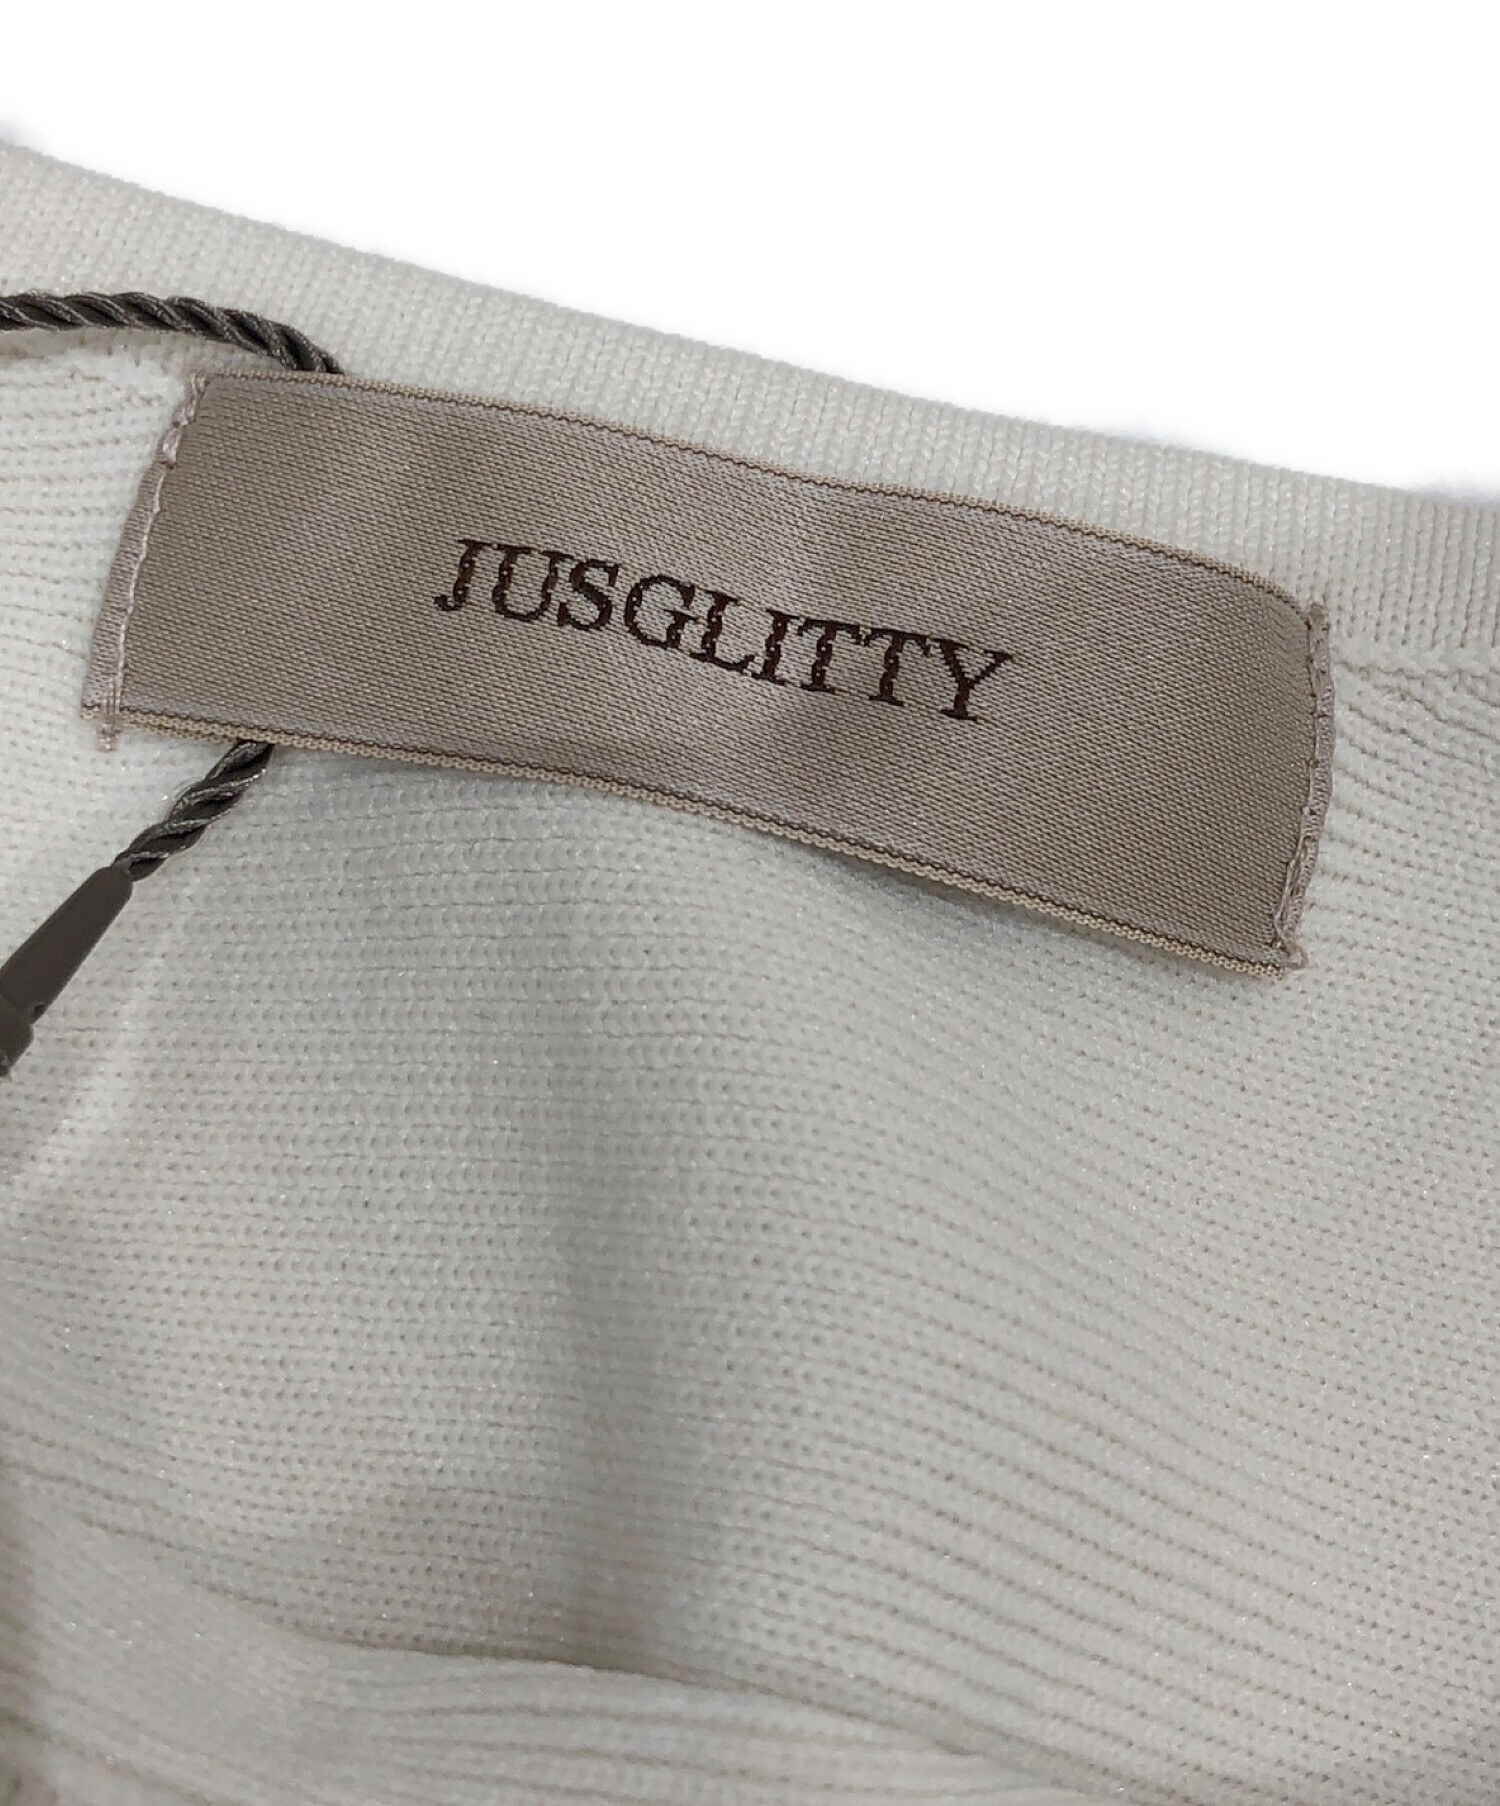 JUSGLITTY (ジャスグリッティー) ペプラムニットプルオーバーシャツ オフホワイト サイズ:2 未使用品